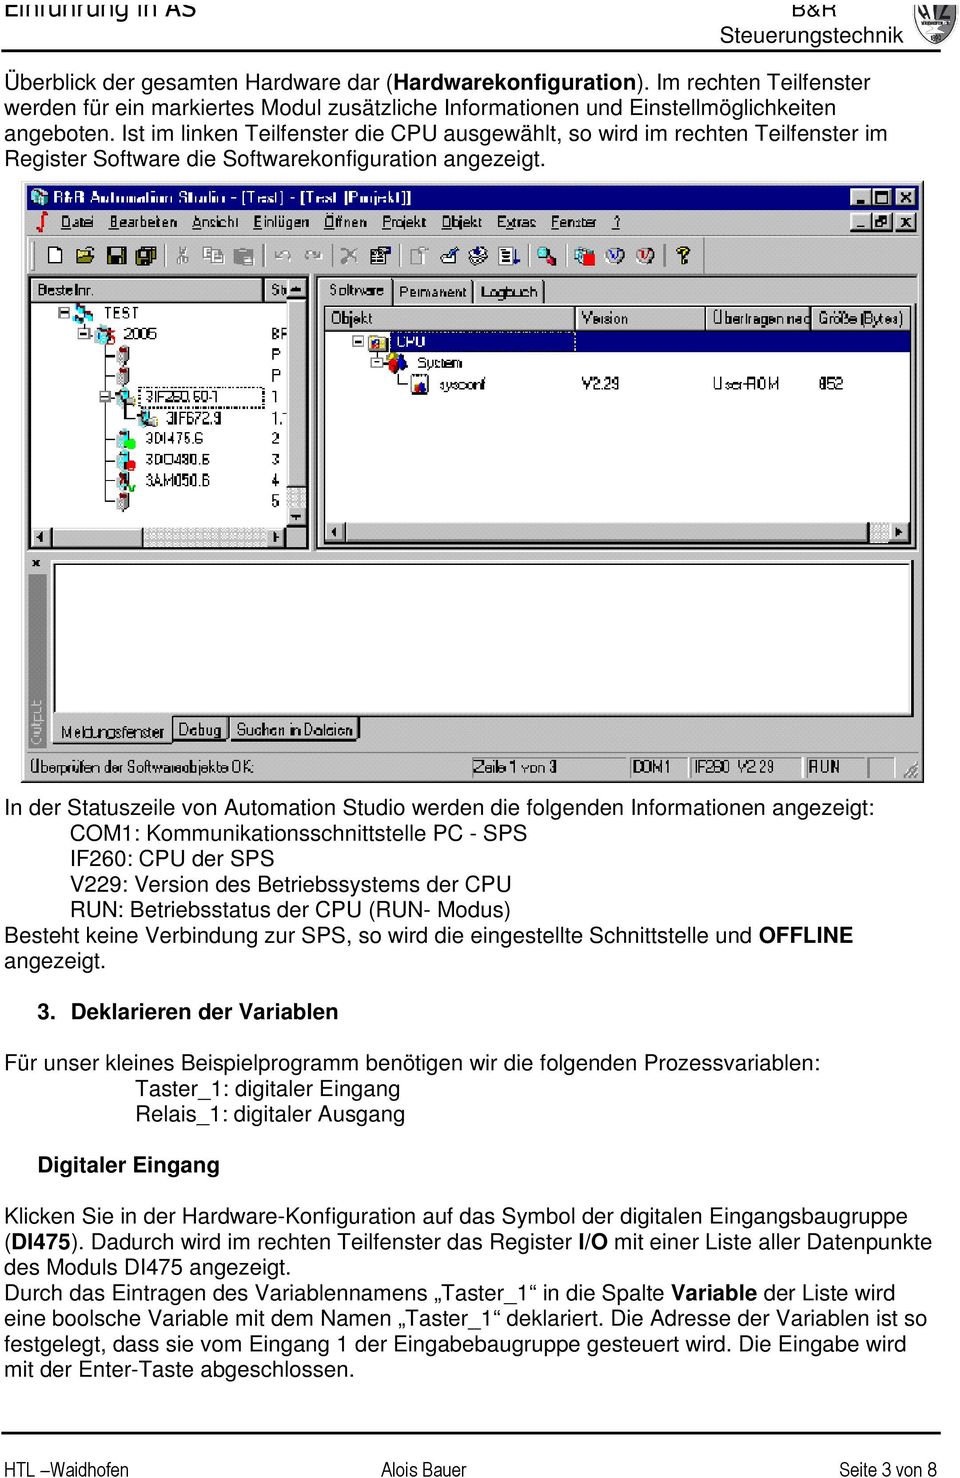 In der Statuszeile von Automation Studio werden die folgenden Informationen angezeigt: COM1: Kommunikationsschnittstelle PC - SPS IF260: CPU der SPS V229: Version des Betriebssystems der CPU RUN: